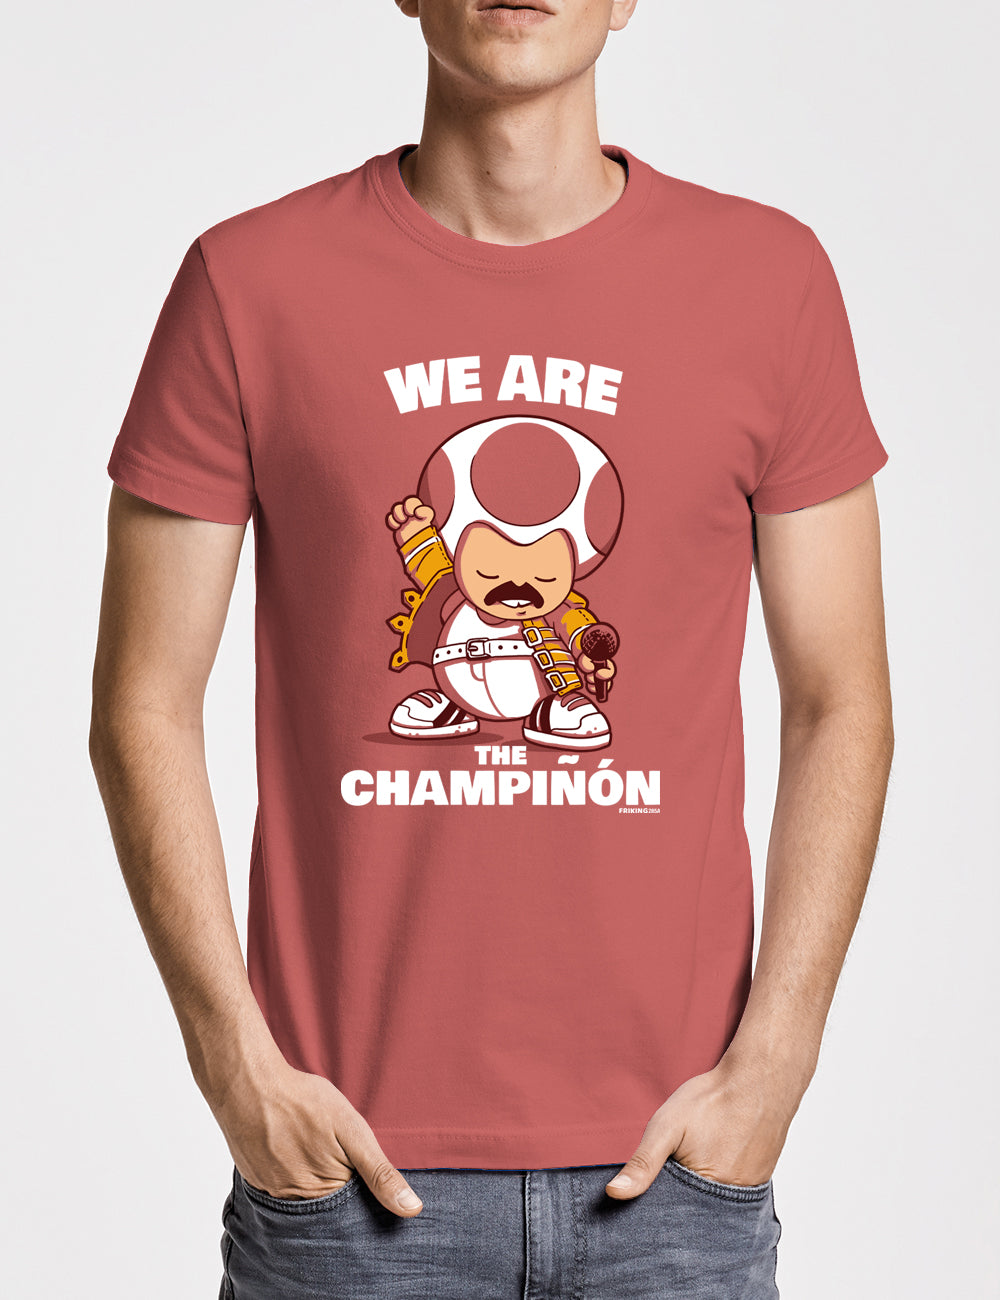 We are the champinon